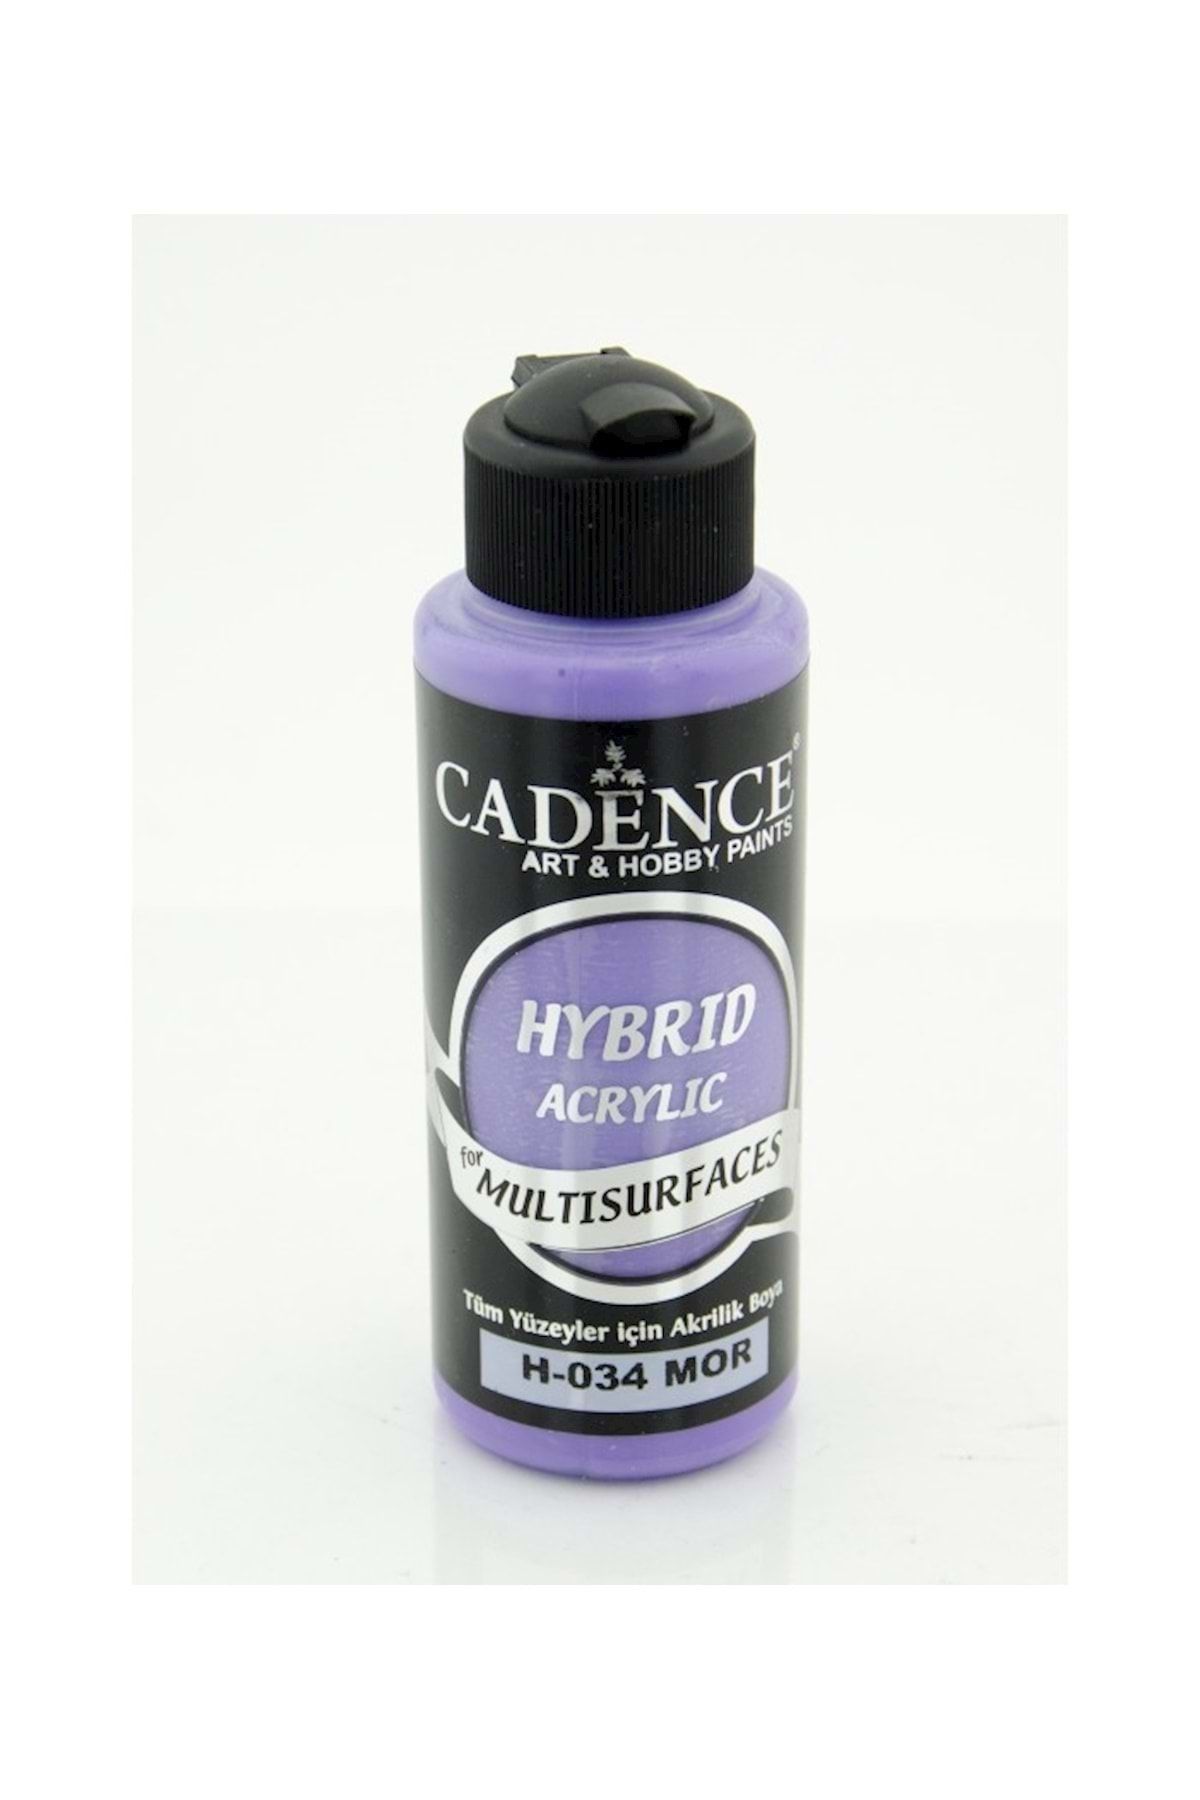 Cadence Boya Cadence Hybrıd Acrylic Multisurface H-034 Mor